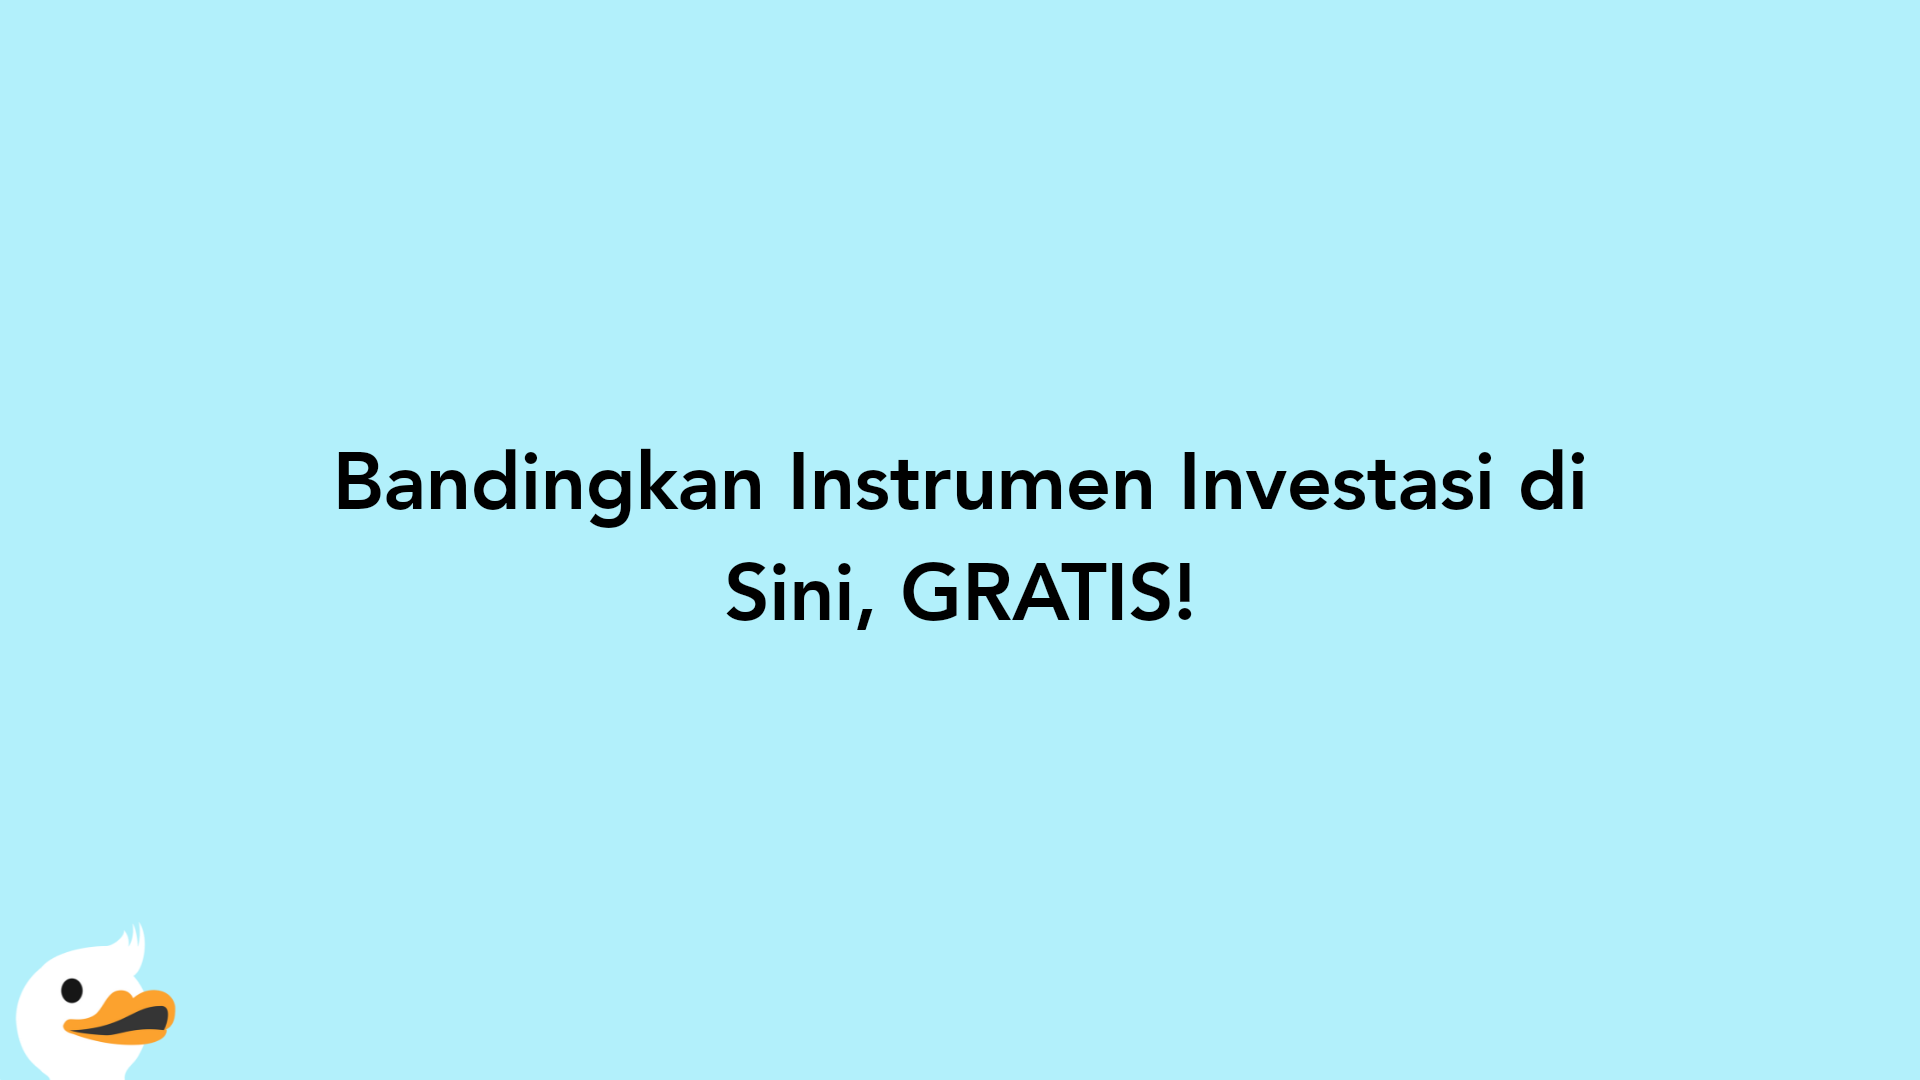 Bandingkan Instrumen Investasi di Sini, GRATIS!